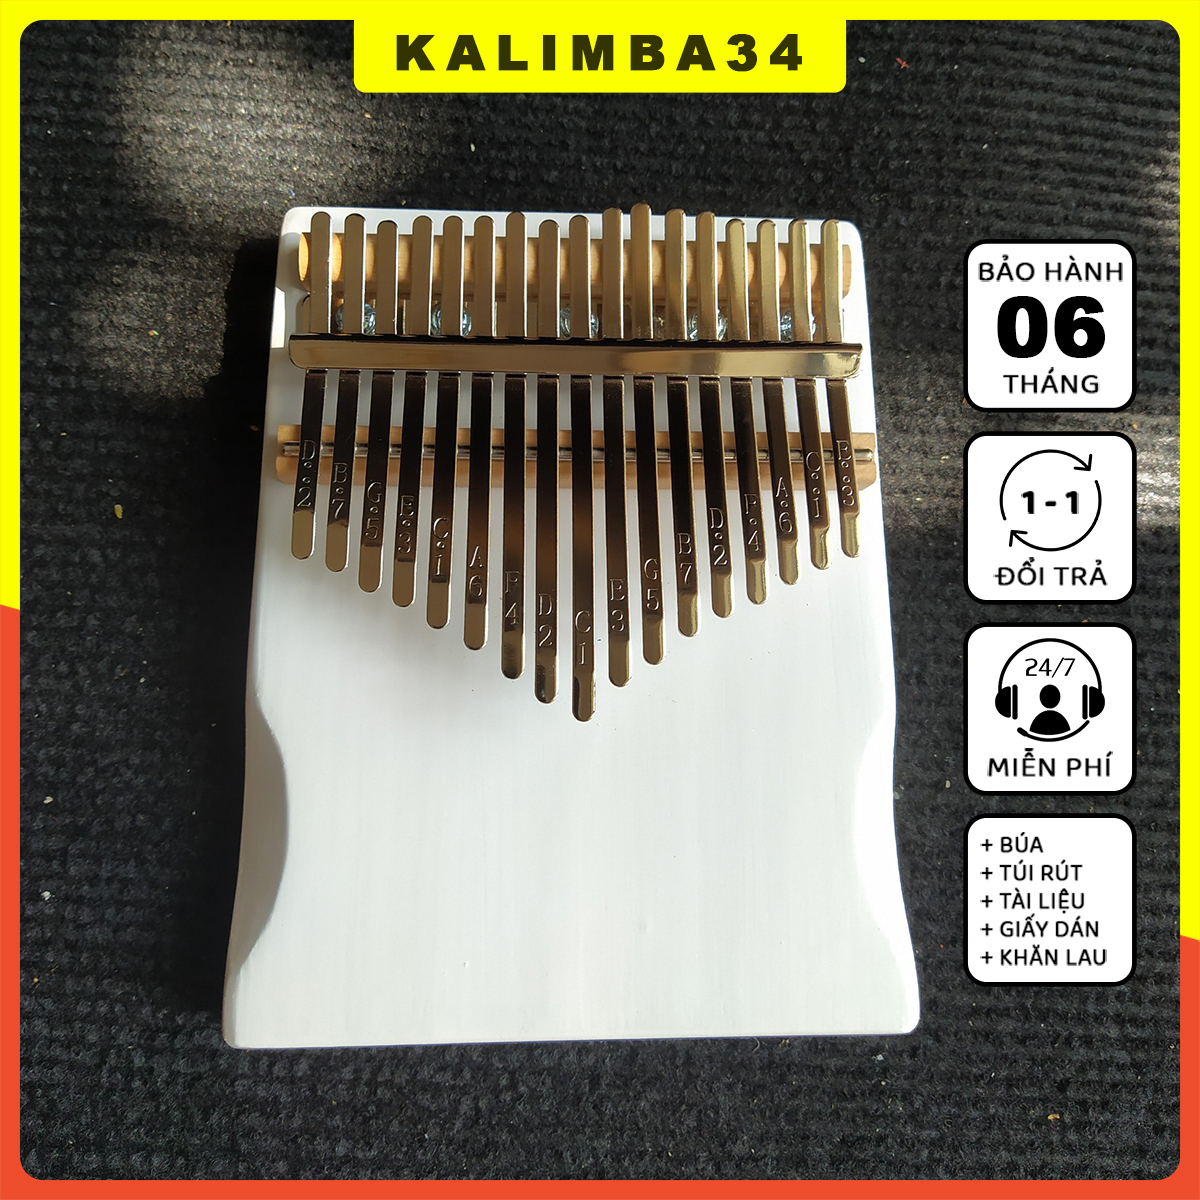 Đàn kalimba 17 phím màu trắng KL34 nguyên khối, Kalimba rẻ phủ sơn an toàn cho bé tặng đủ phụ kiện